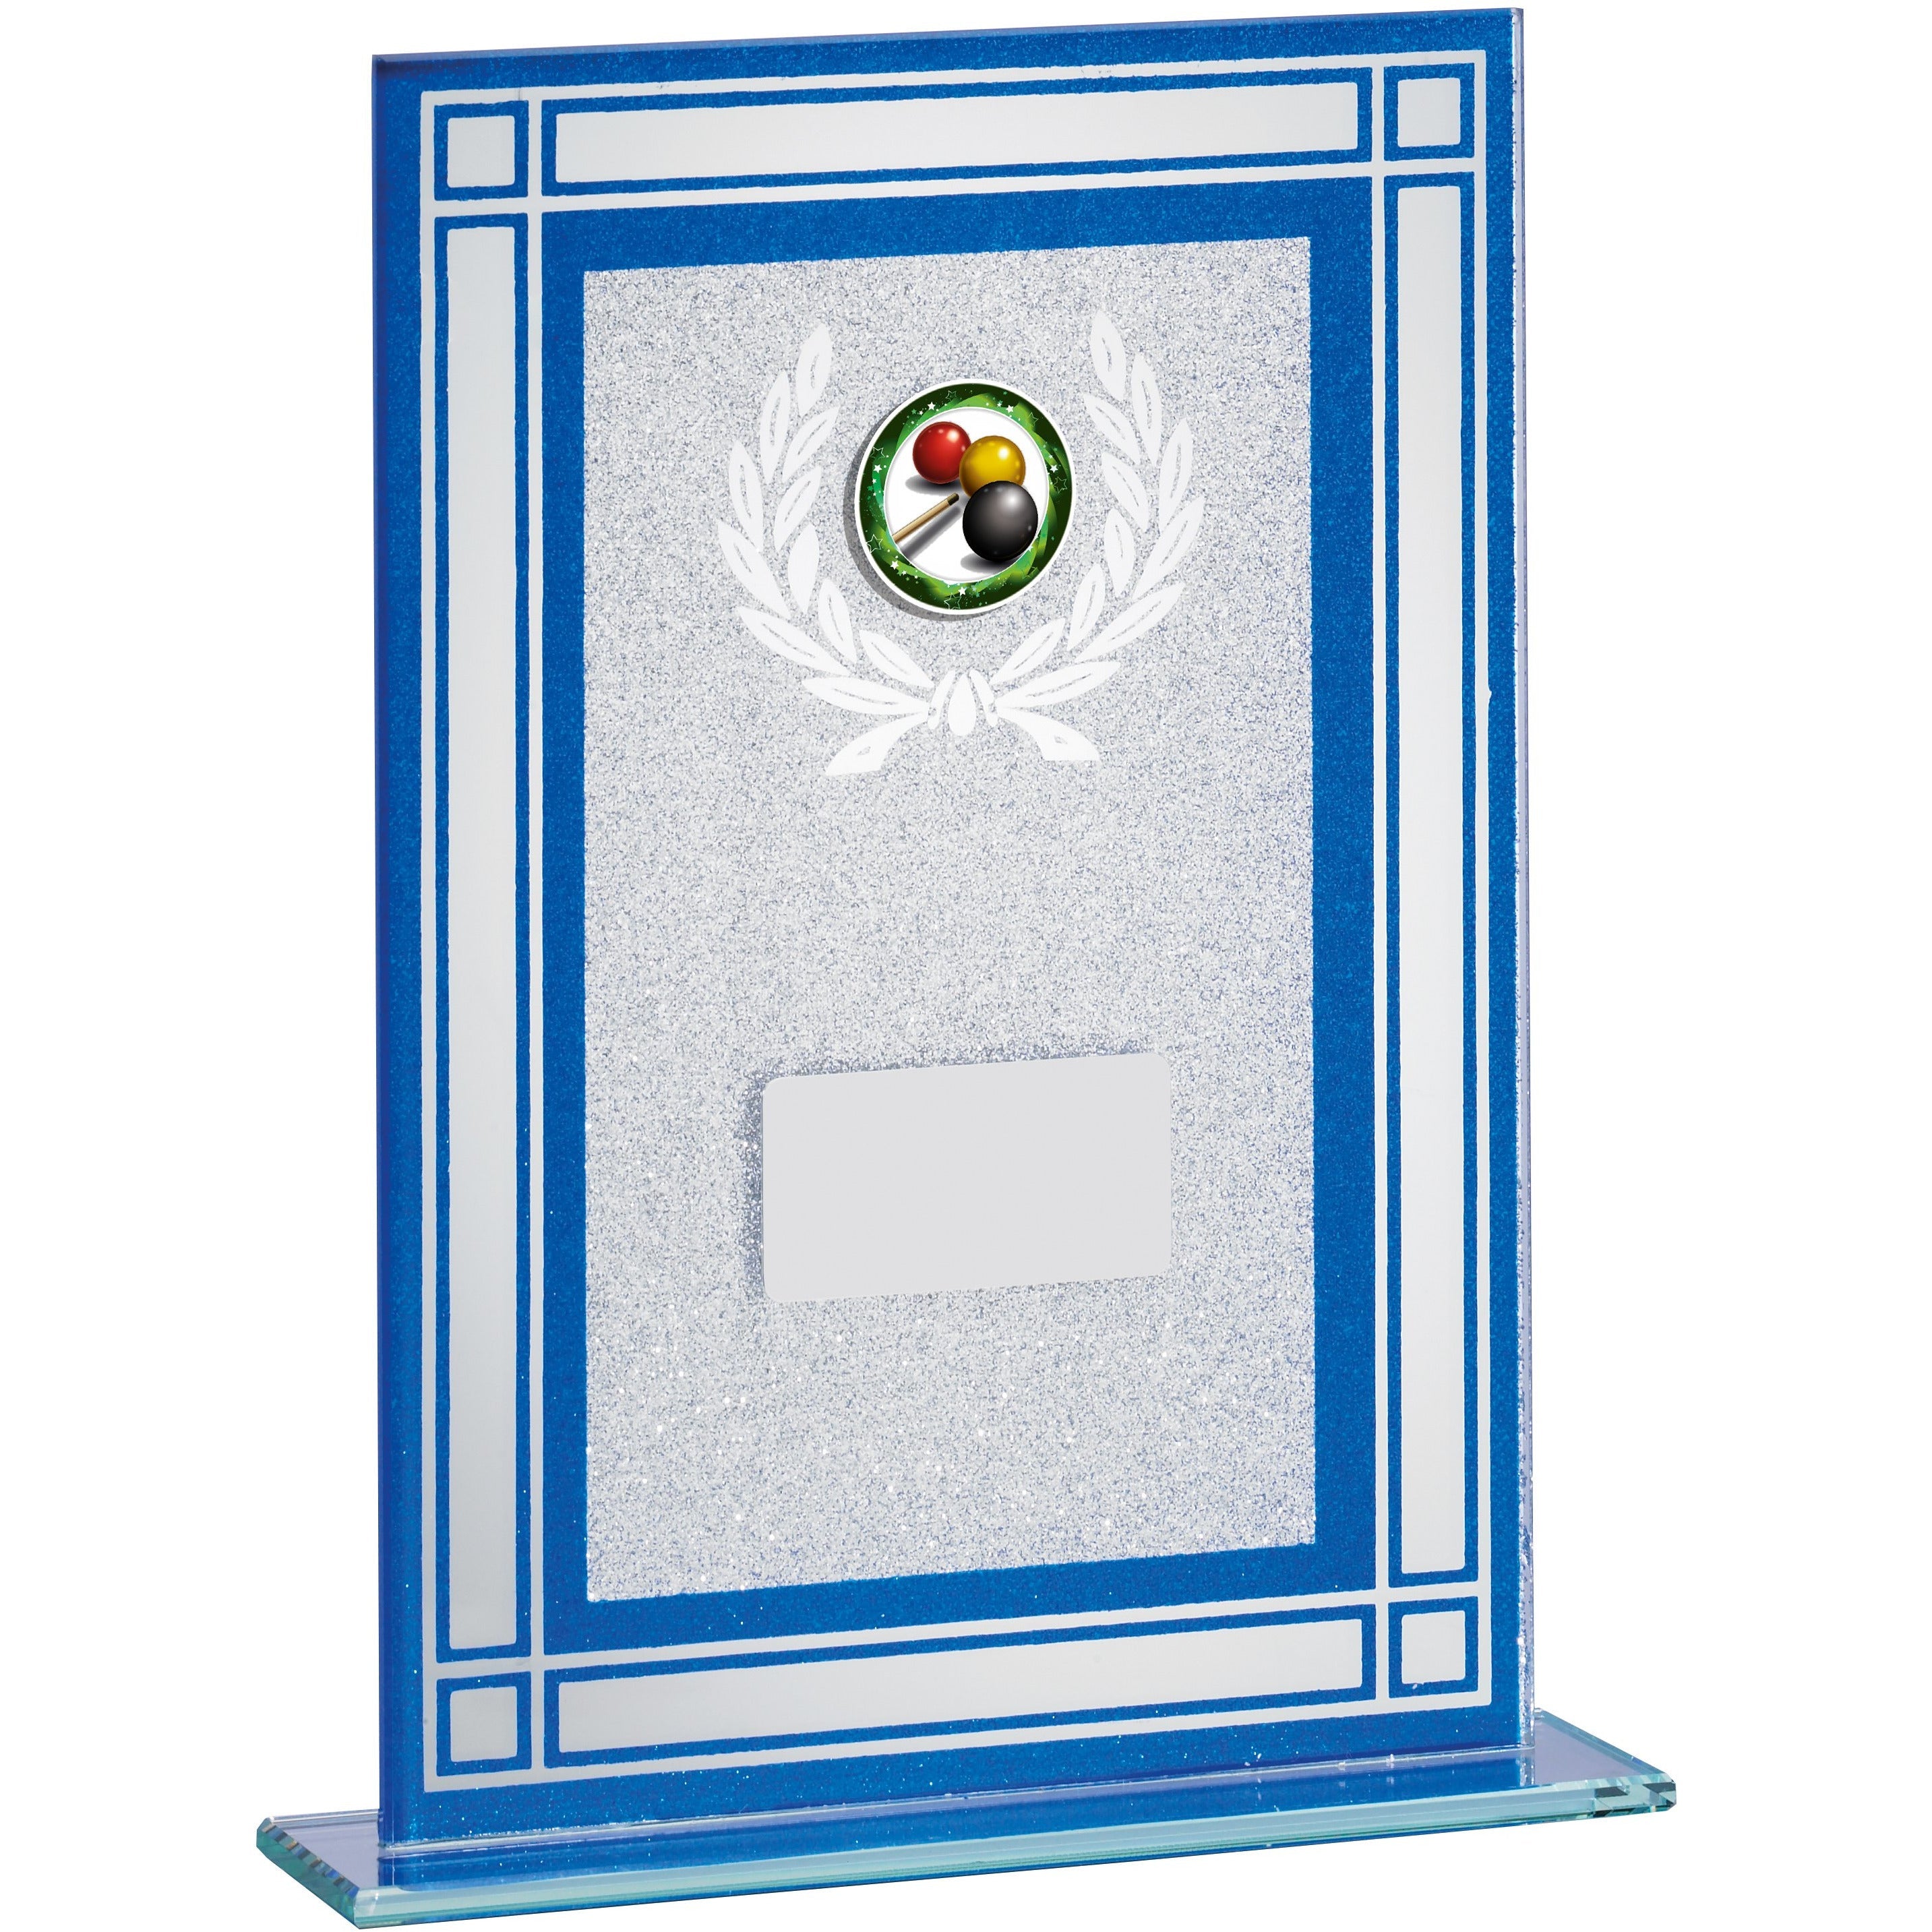 Blue Framed Glass Award with Laurel